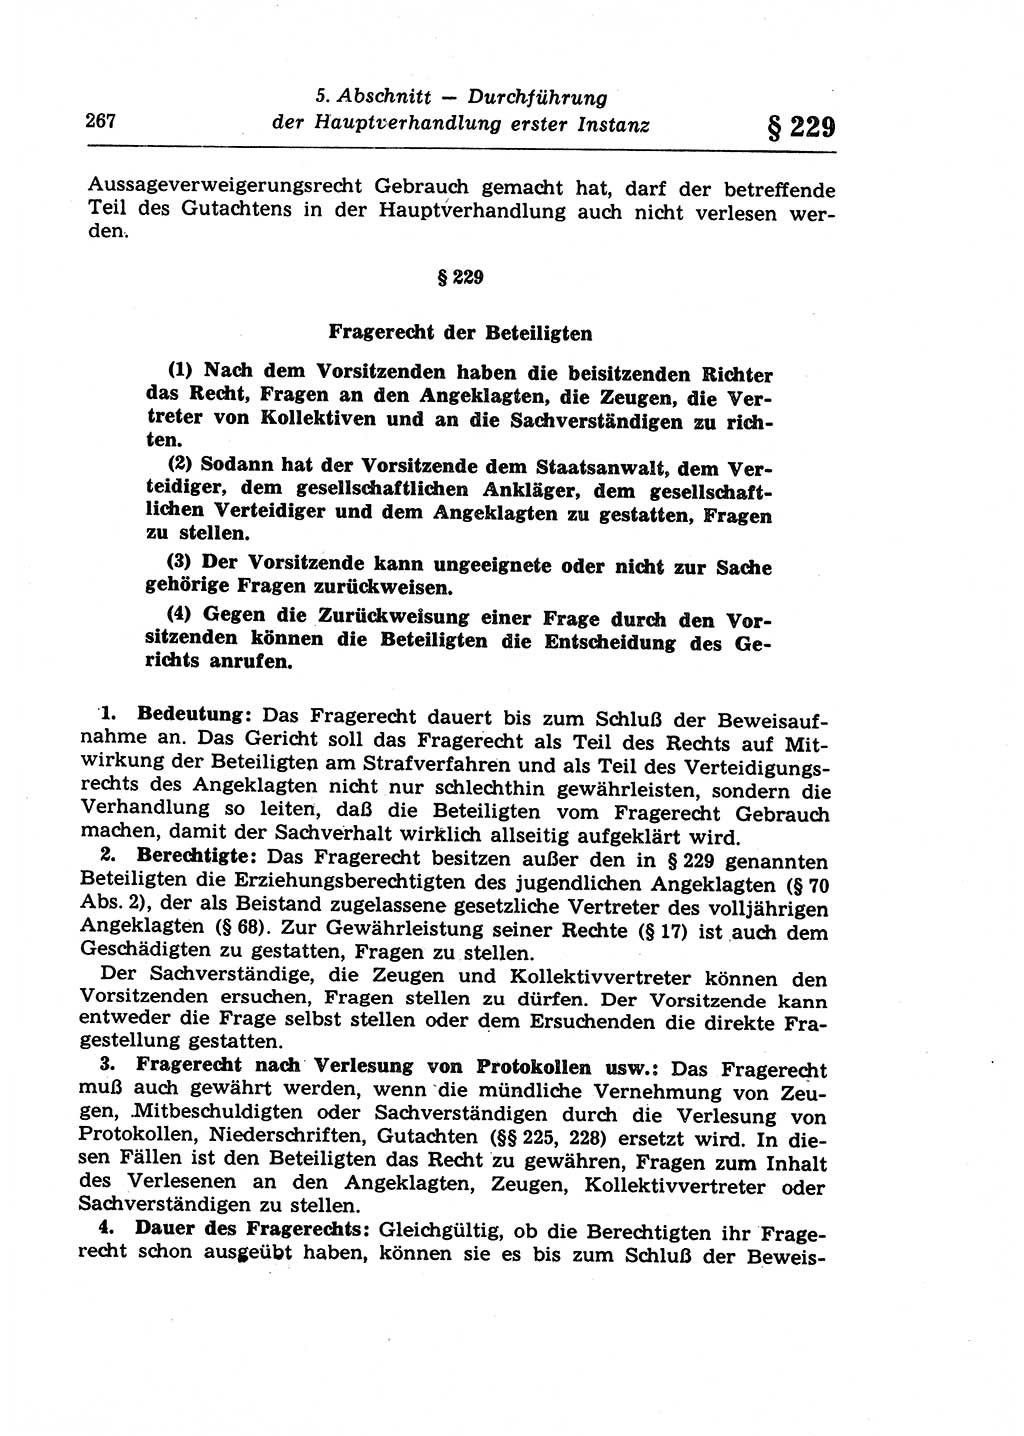 Strafprozeßrecht der DDR (Deutsche Demokratische Republik), Lehrkommentar zur Strafprozeßordnung (StPO) 1968, Seite 267 (Strafprozeßr. DDR Lehrkomm. StPO 19688, S. 267)